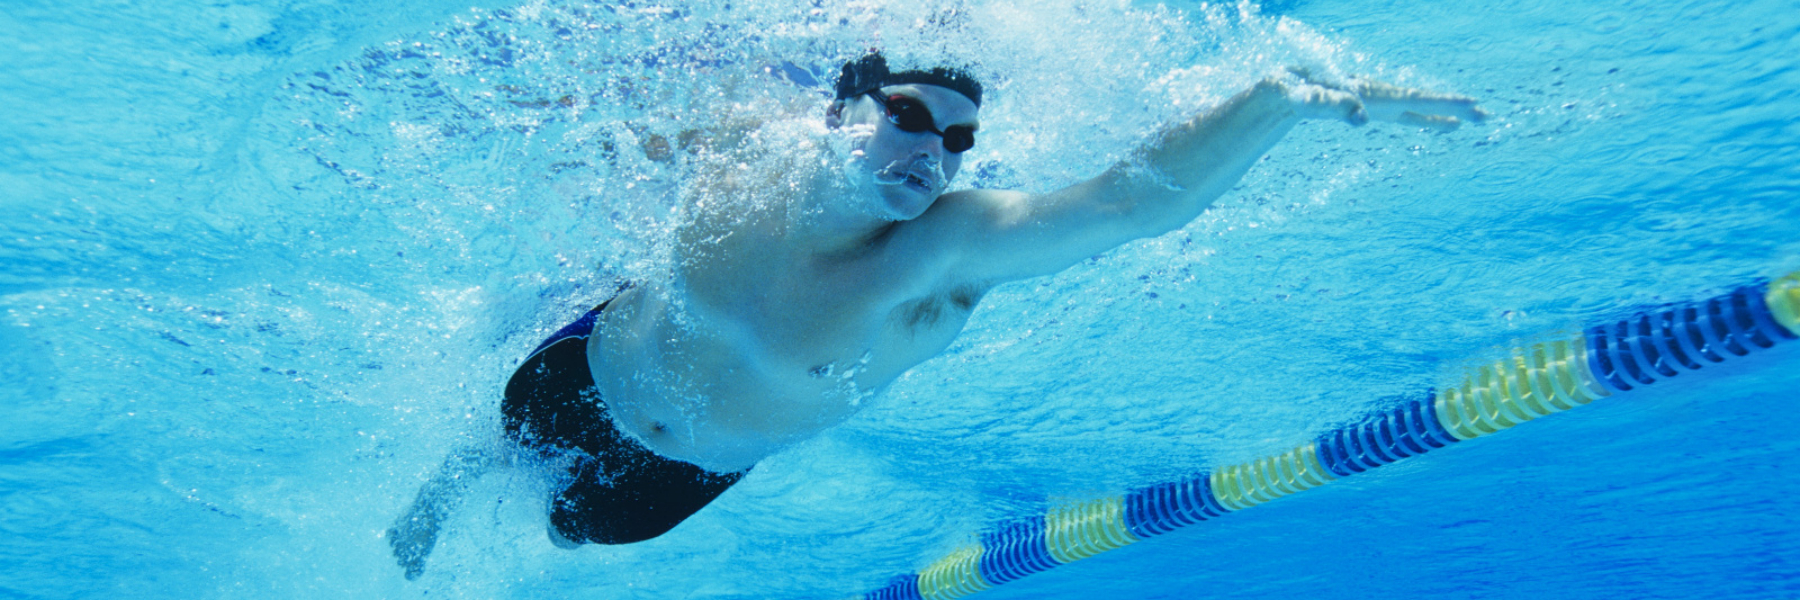 Pływanie dla zdrowia - to inna filozofia życia.